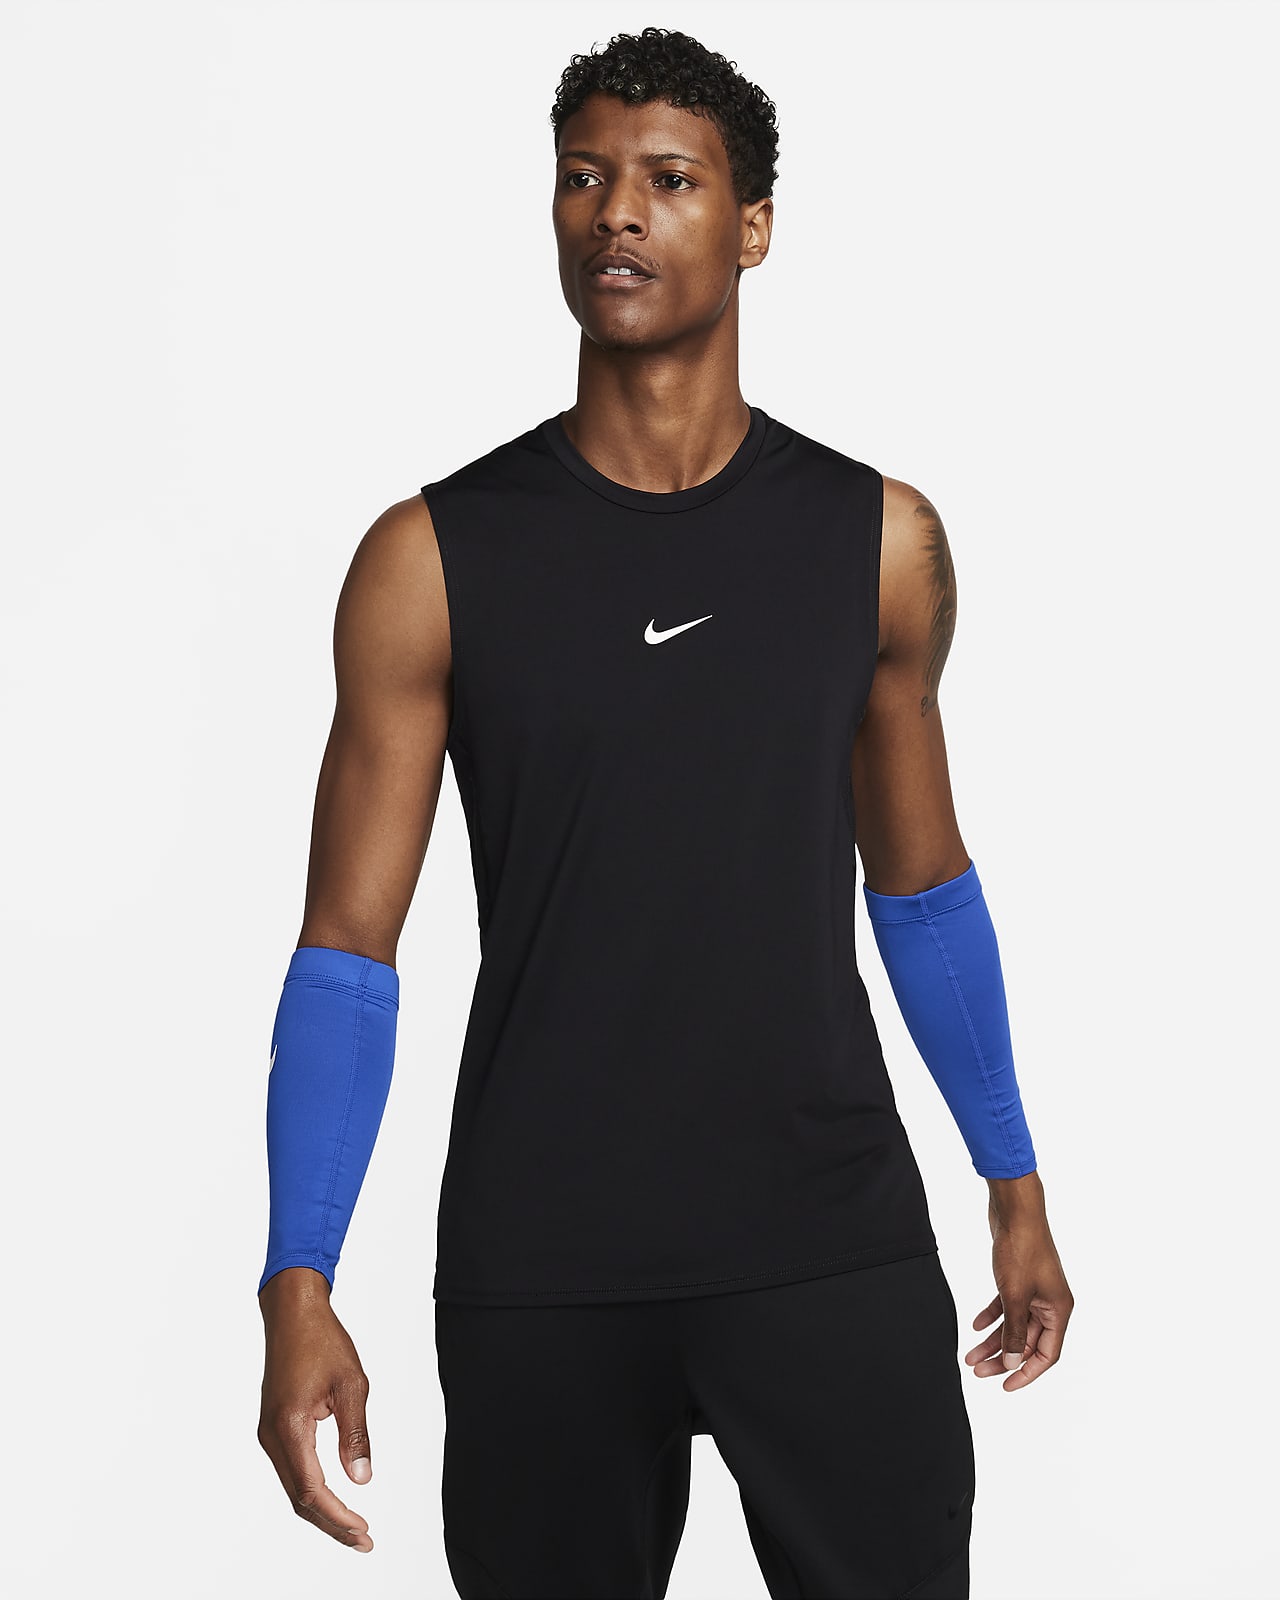 Hombre Mangas y bandas para el brazo. Nike US